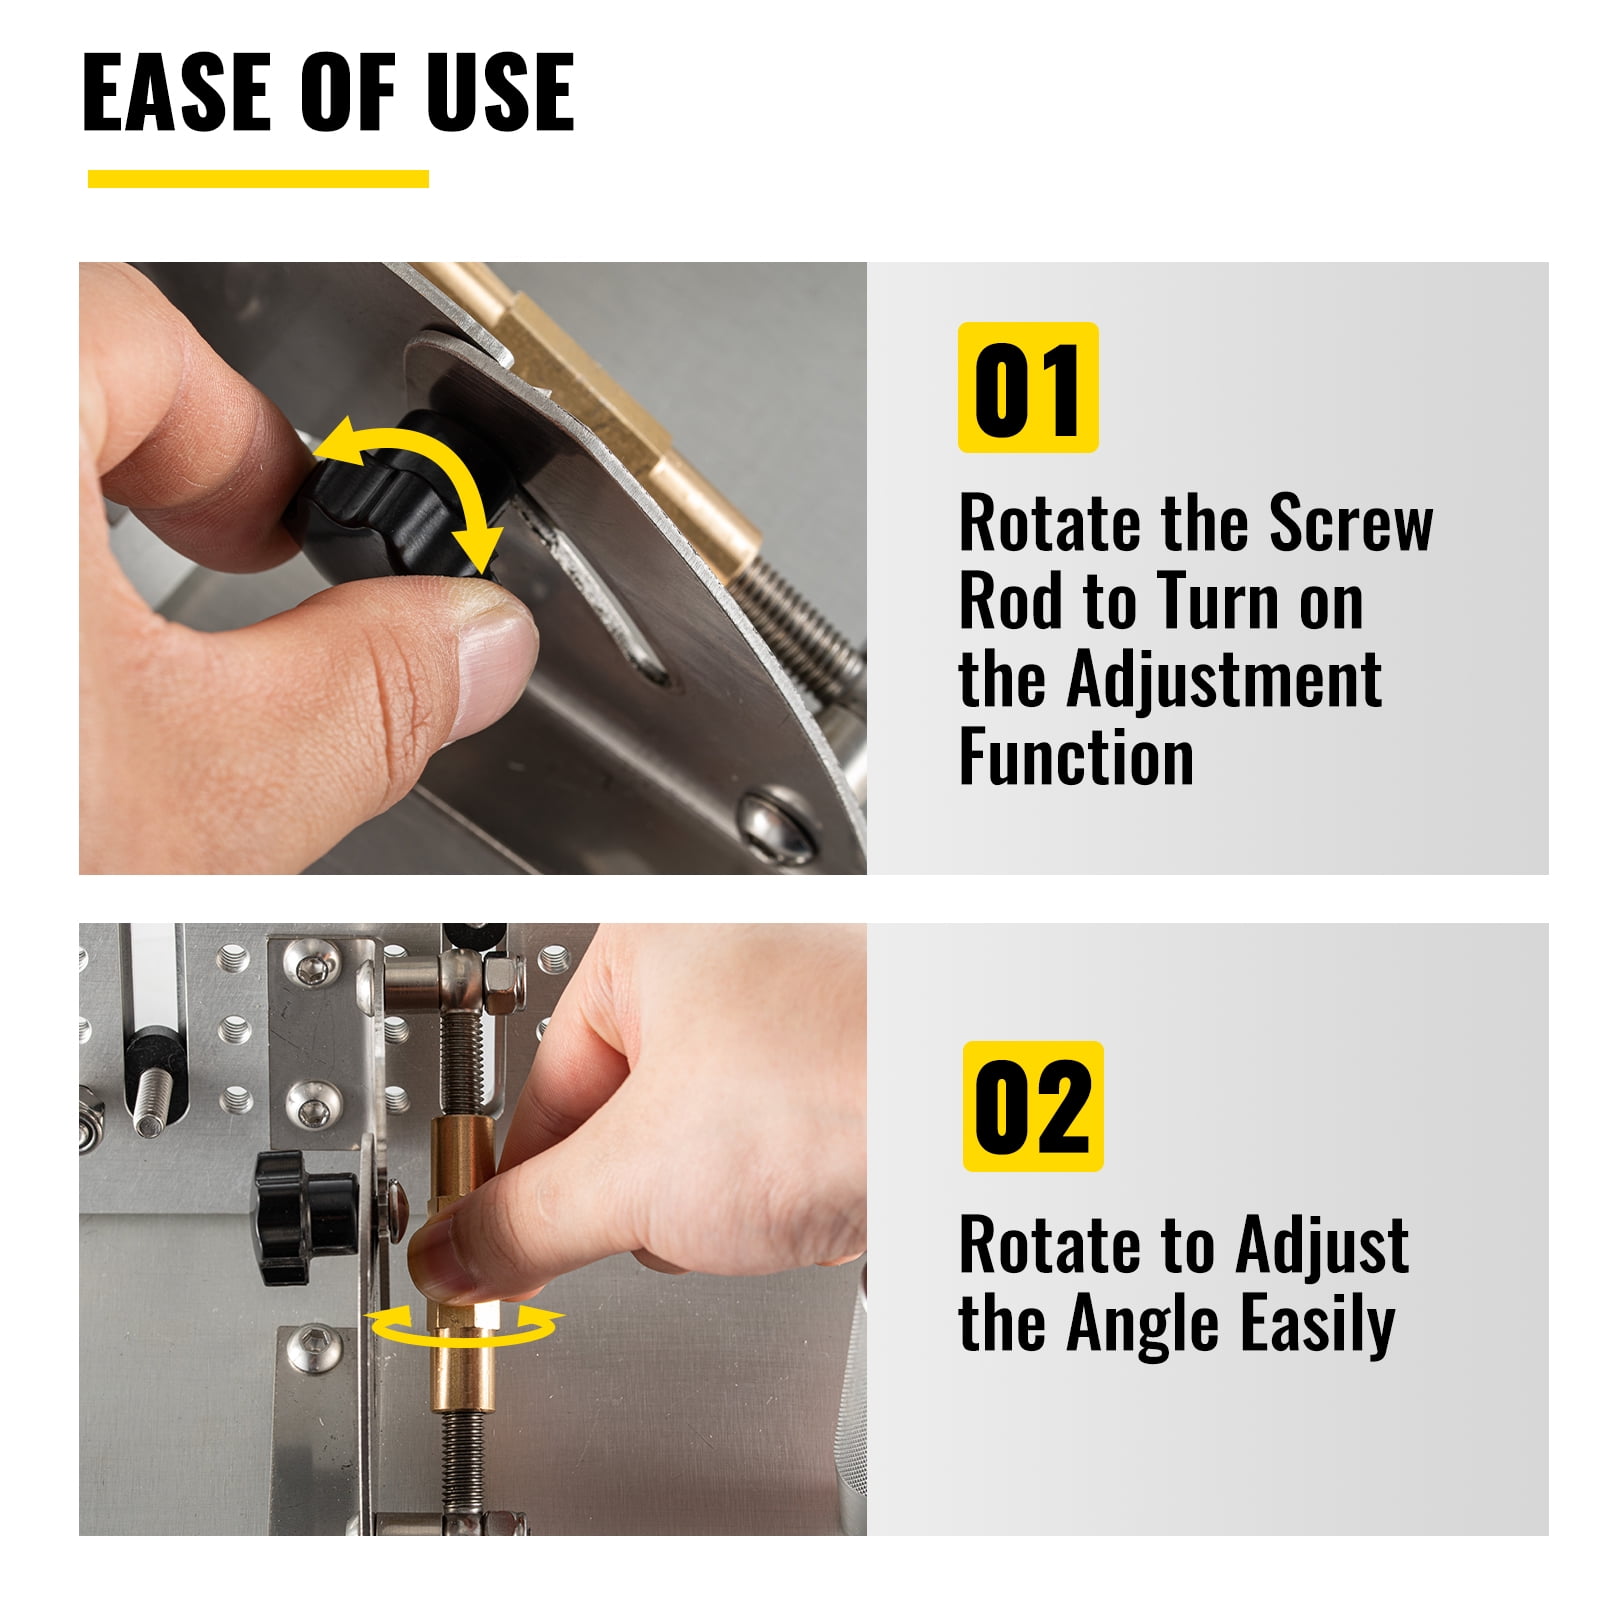 Universal Adjust Knife Sharpener Jig for Bench Grinder Sharpening System,  Angle and Height Adjustable Sharpening Tool Rest Jig for 2-1/2 Width Knife